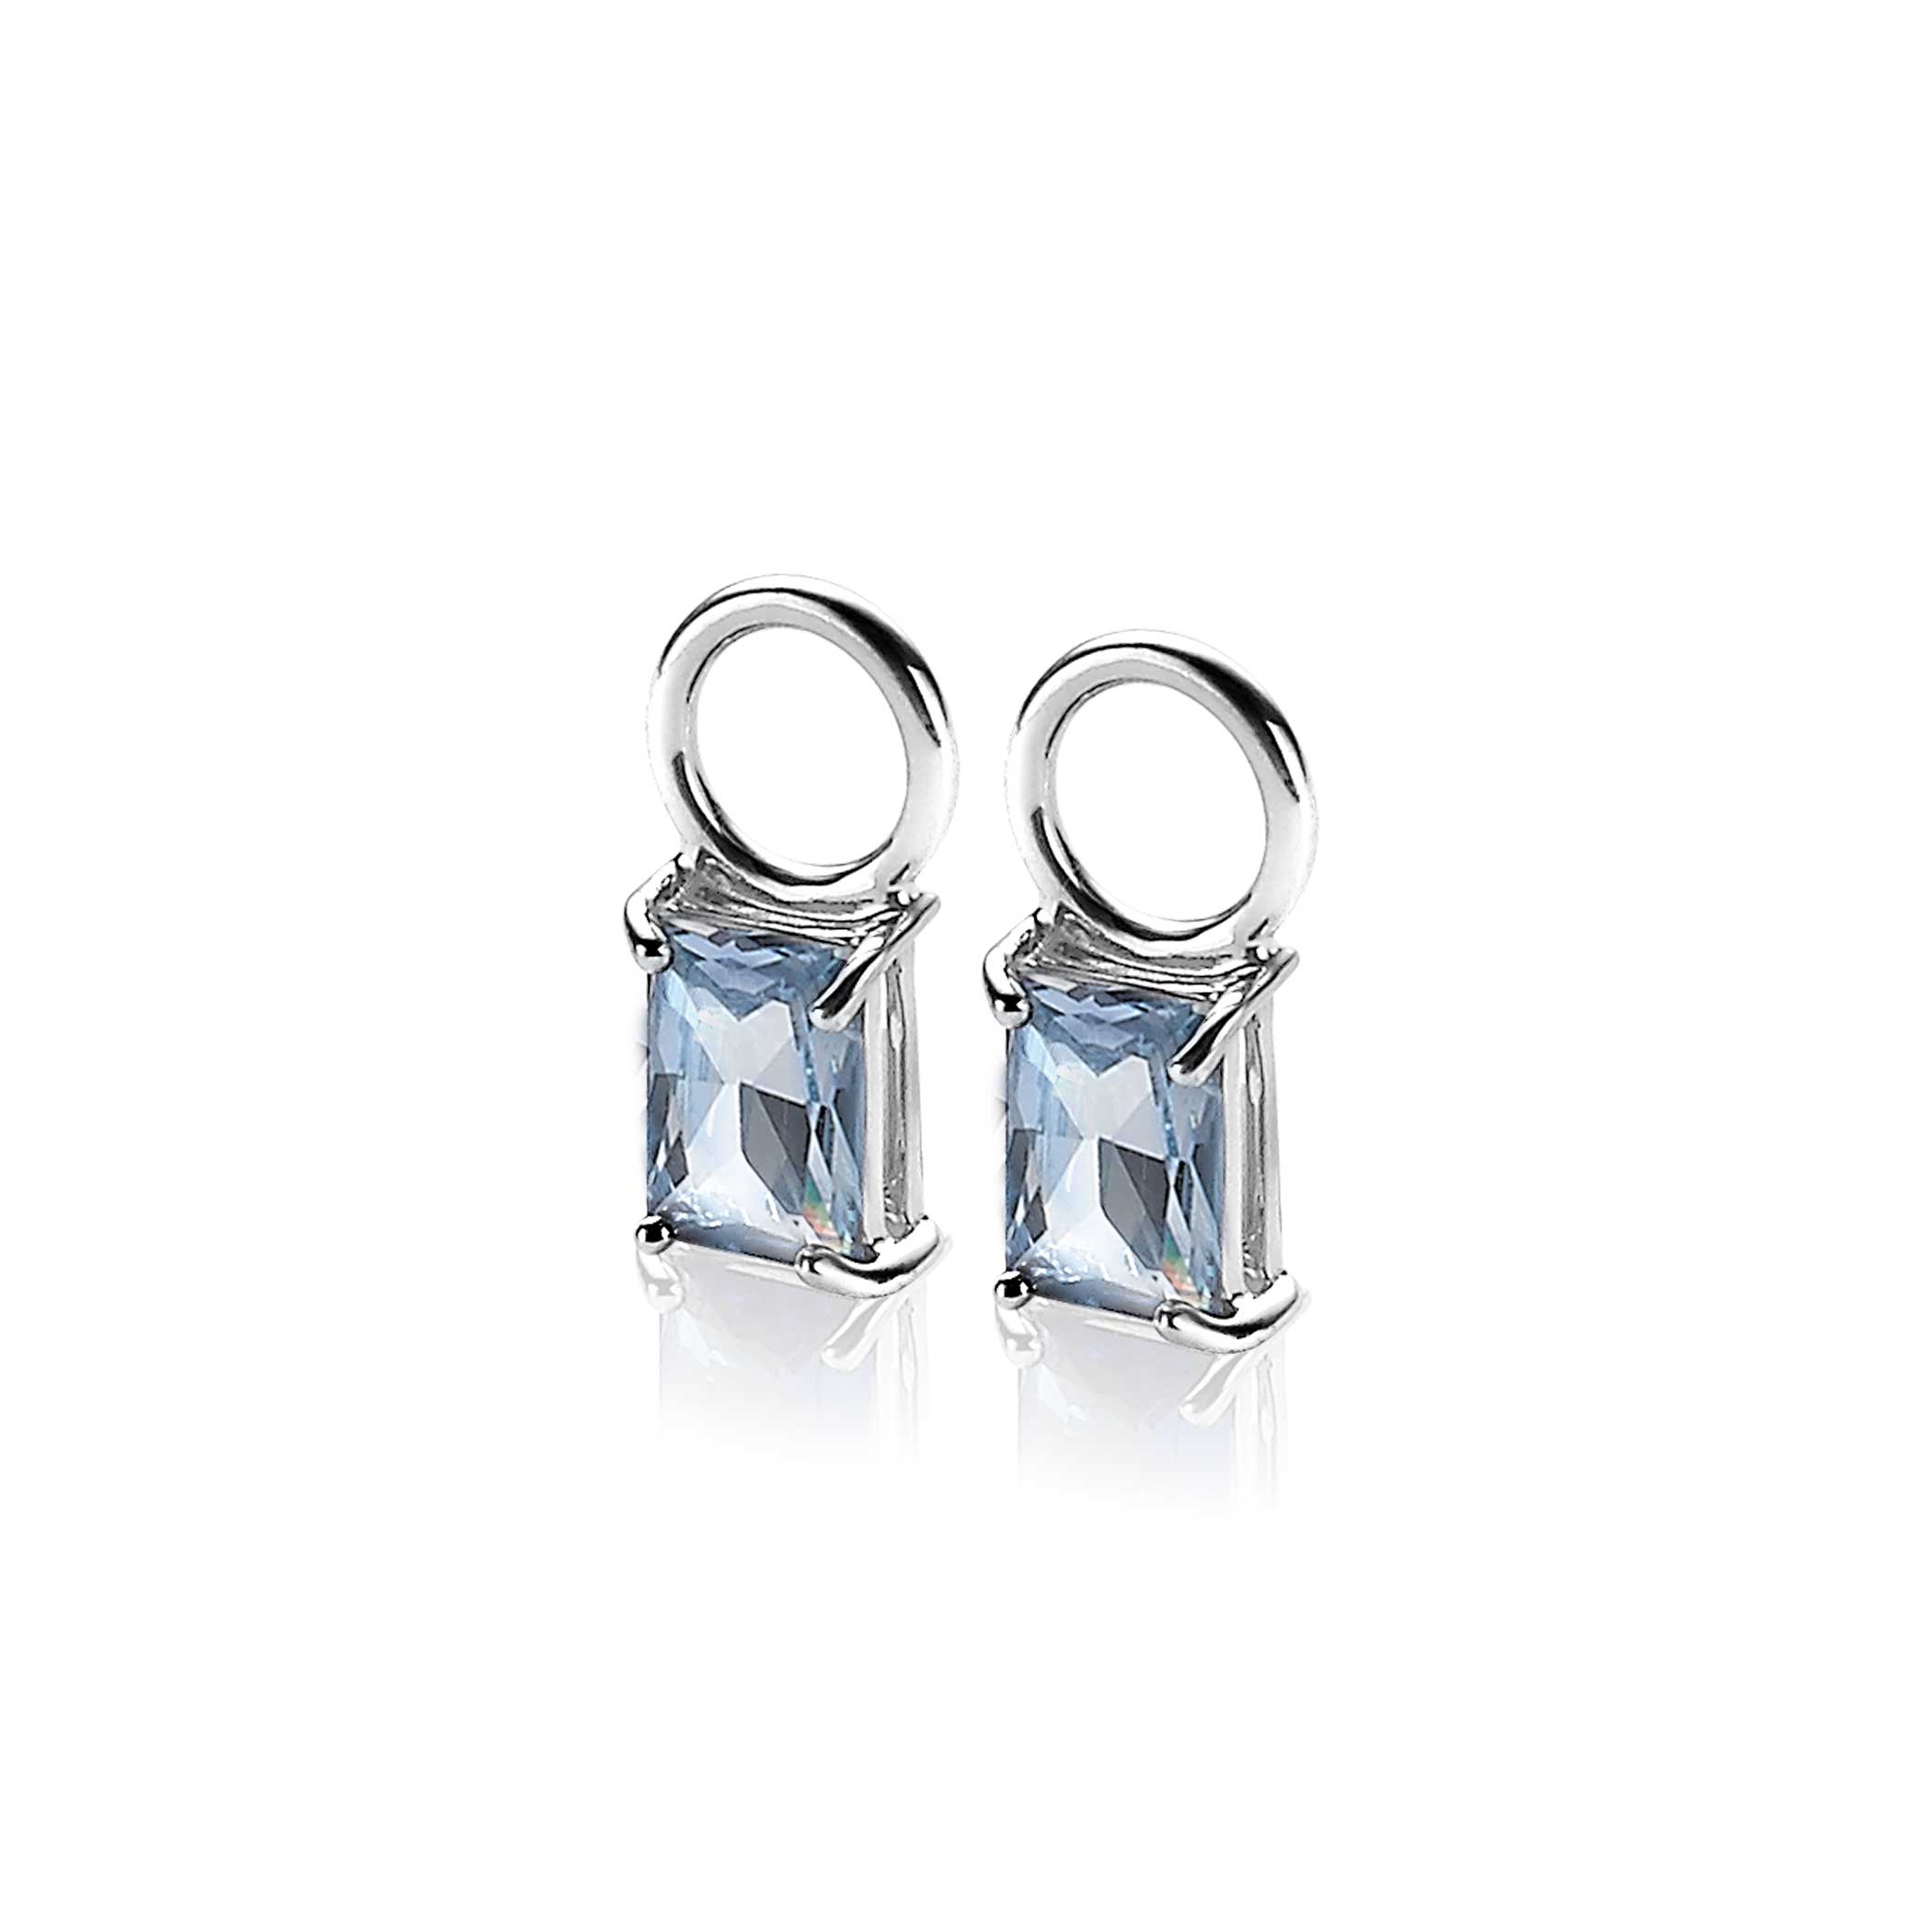 12mm ZINZI Sterling Silver Earrings Pendants Blue Rectangle ZICH2021B (excl. hoop earrings)